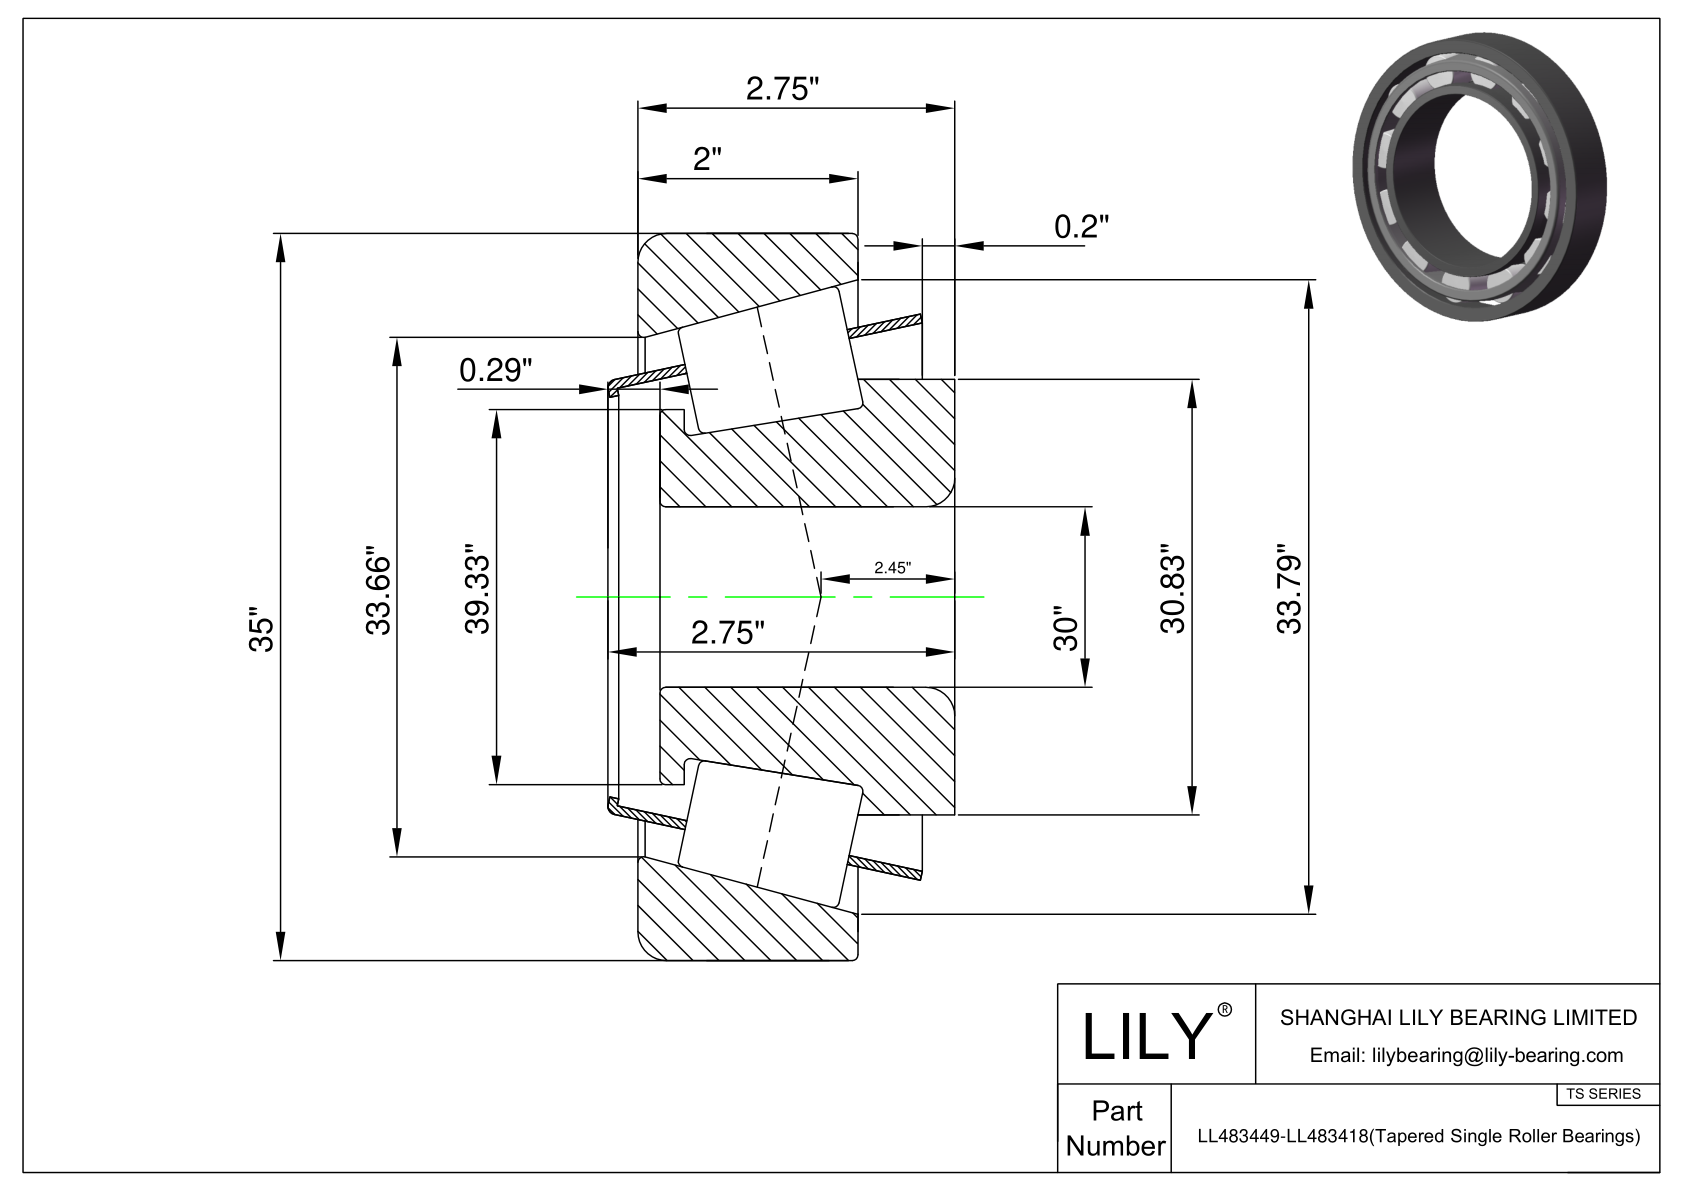 LL483449-LL483418 TS系列(圆锥单滚子轴承)(英制) CAD图形